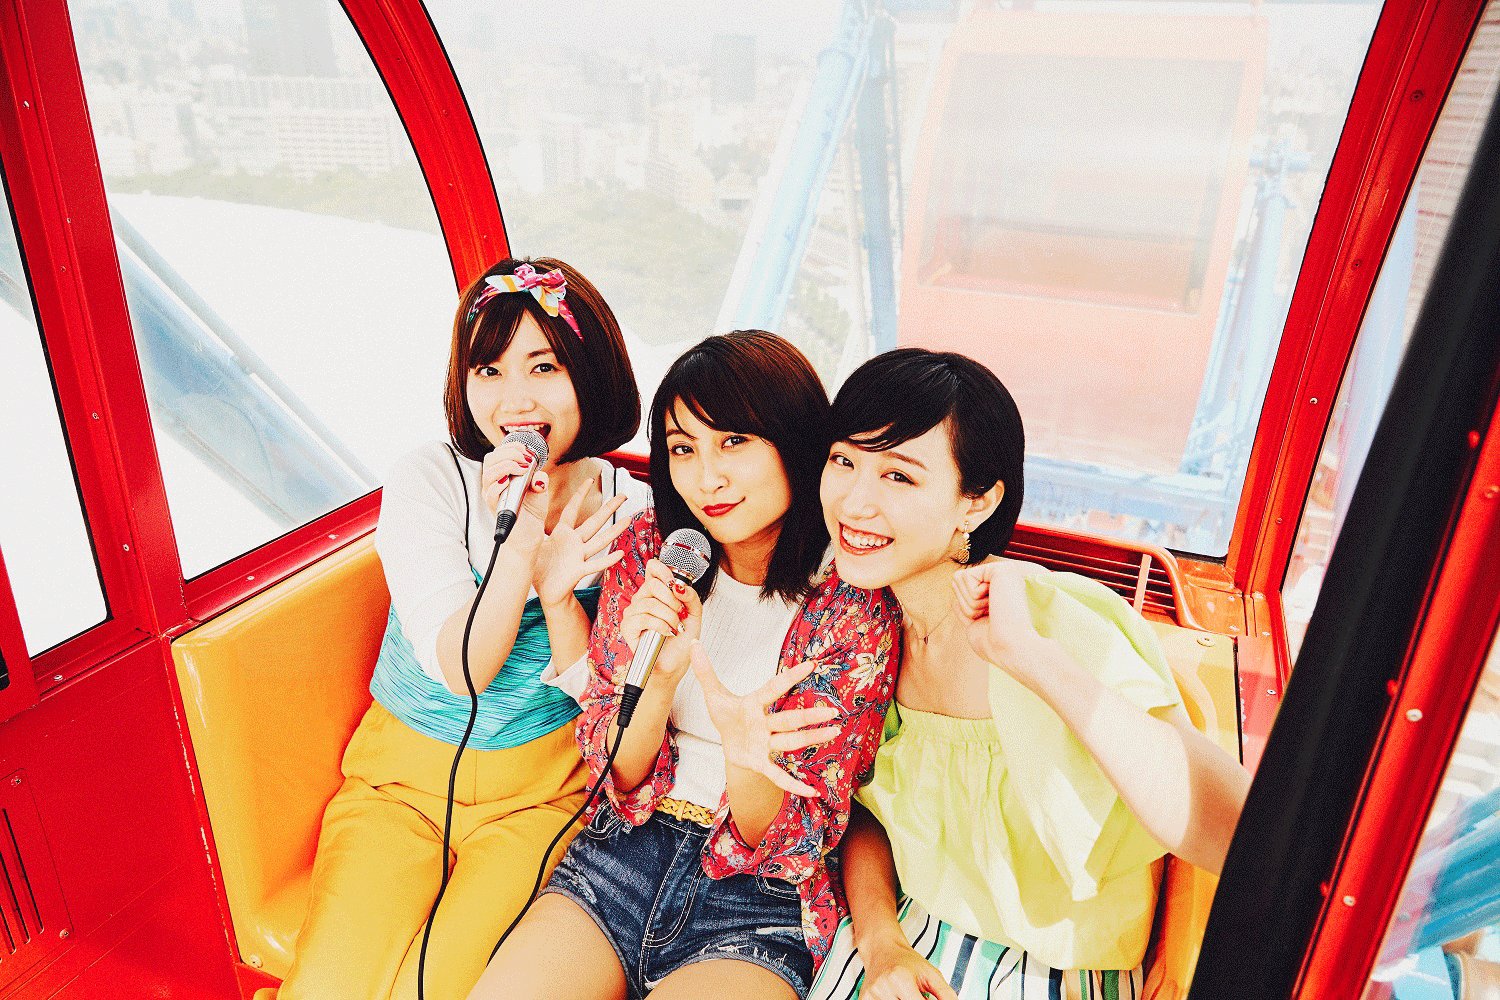 How to sing karaoke in the Ferris wheel's cabin in Tokyo